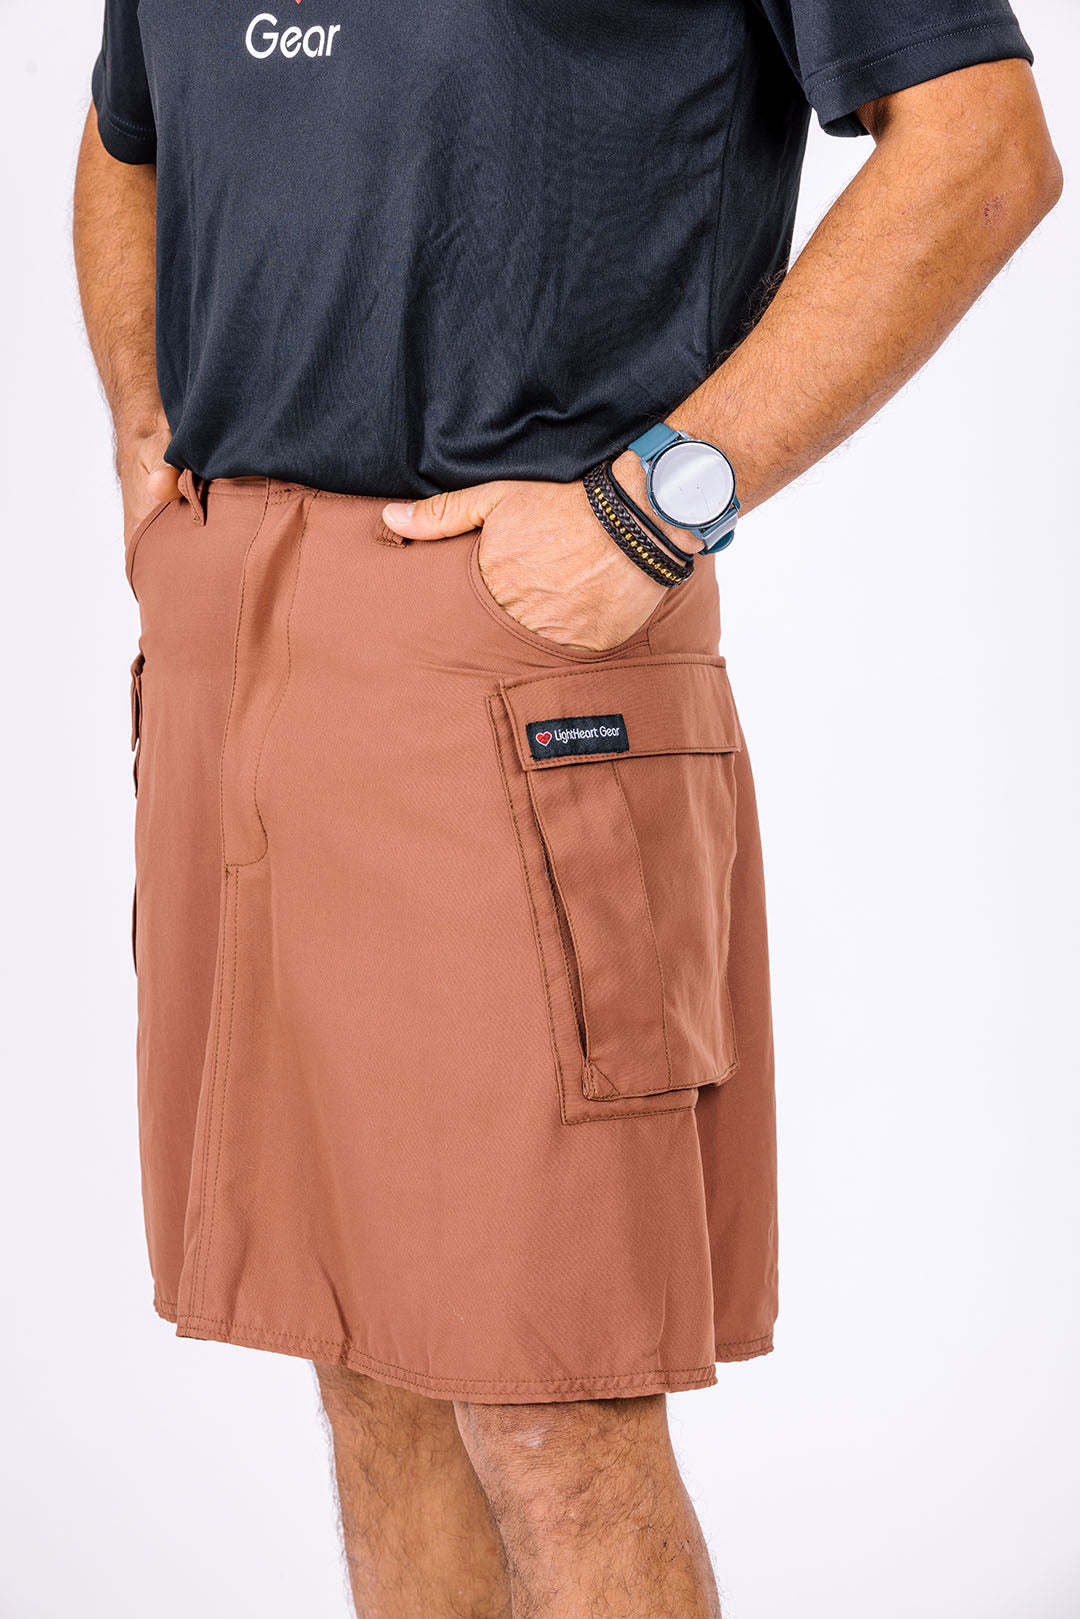 Men's hiking skirt shown in sandalwood color.